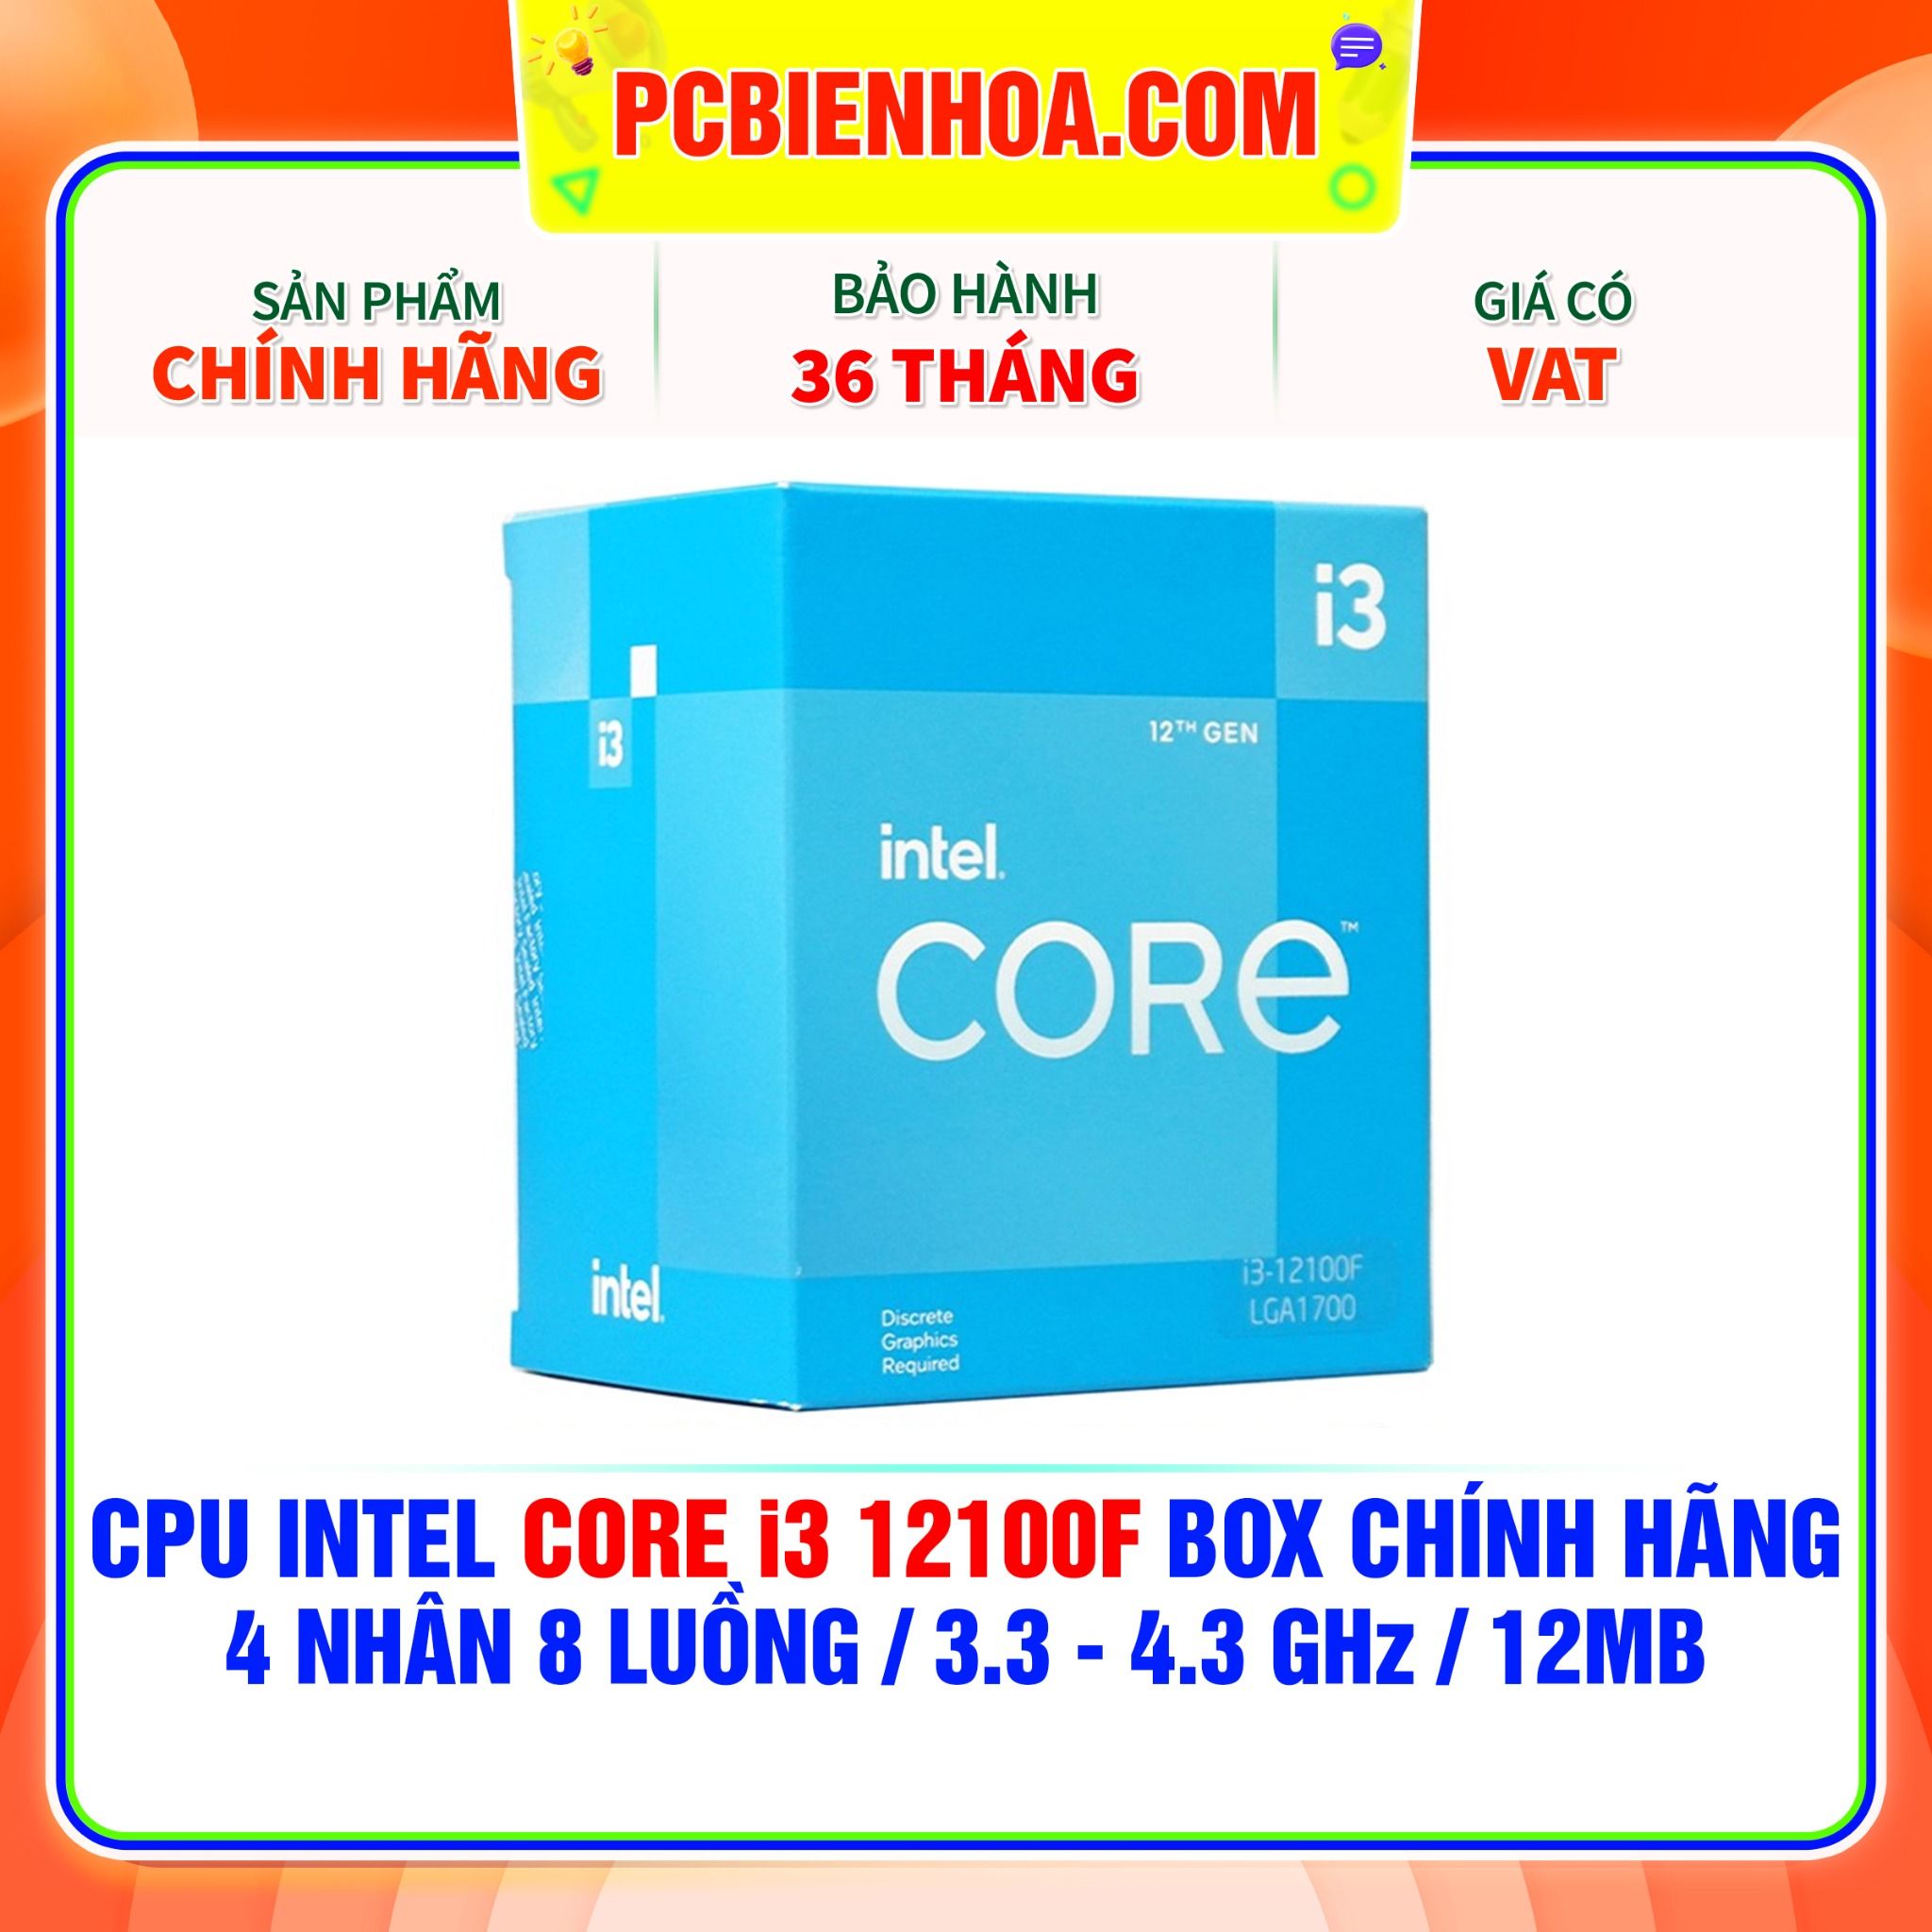  CPU INTEL CORE i3 12100F BOX CHÍNH HÃNG ( 4 NHÂN 8 LUỒNG / 3.3 - 4.3 GHz / 12MB ) 